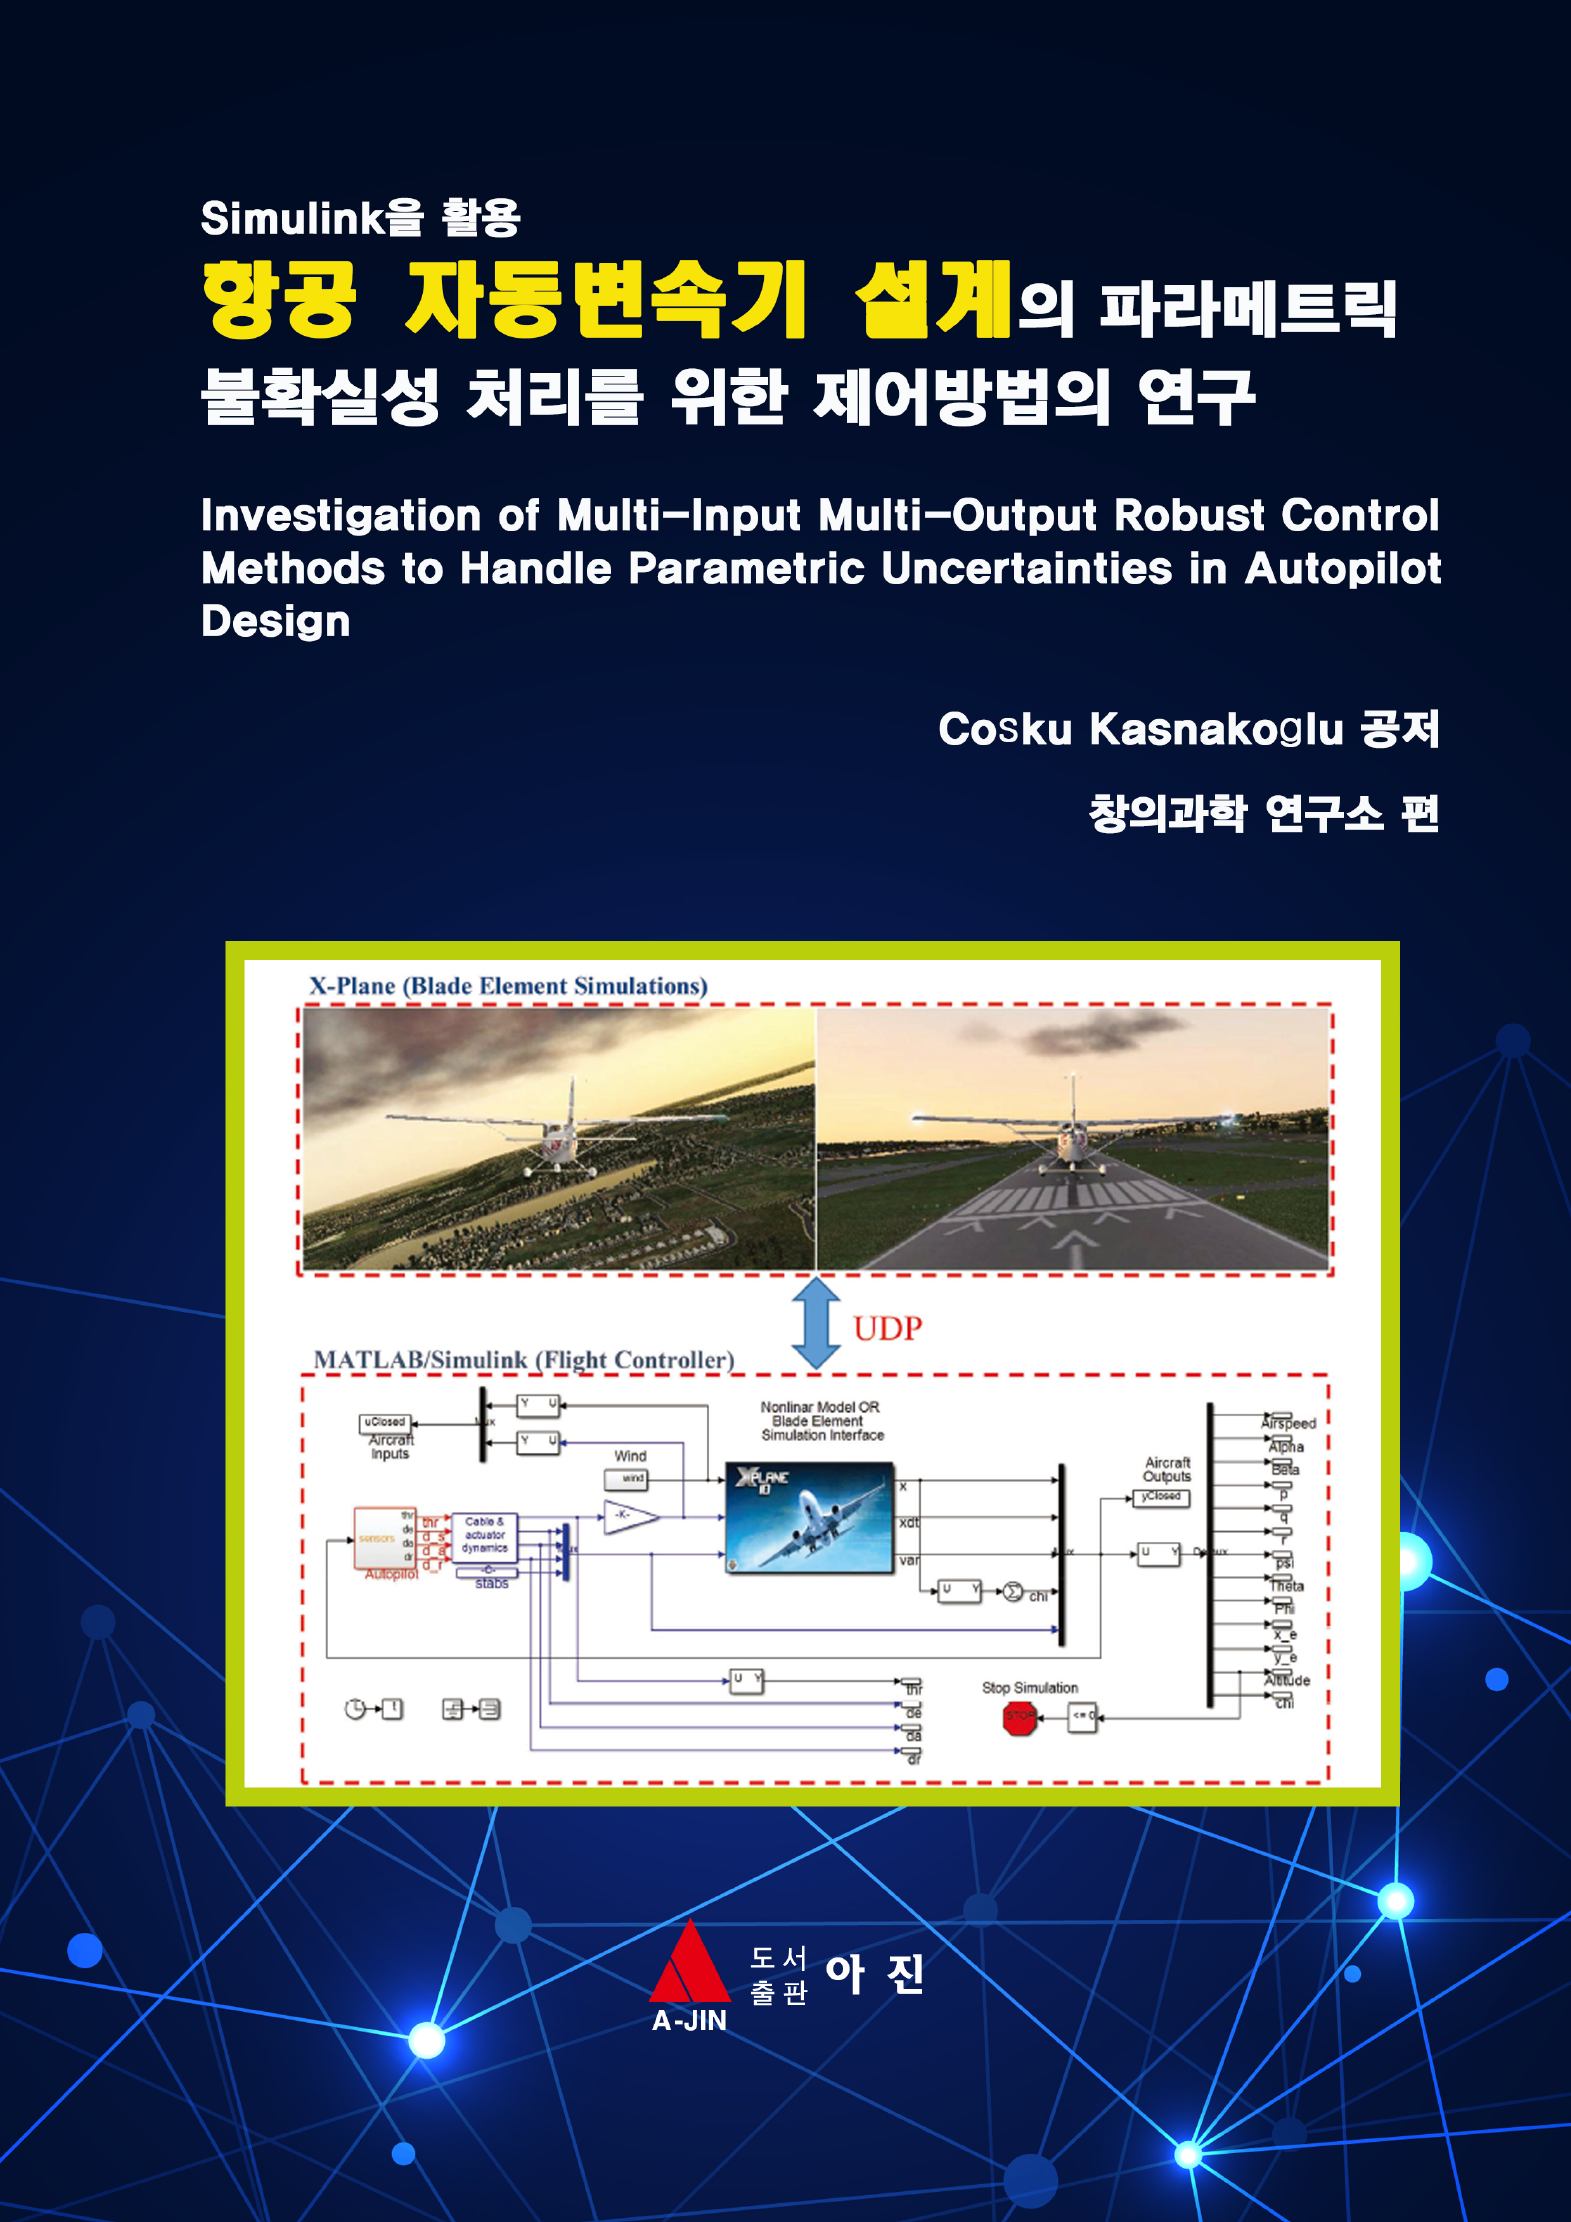 Simulink을 활용 항공 자동변속기 설계의 파라메트릭 불확실성 처리를 위한 제어방법의 연구